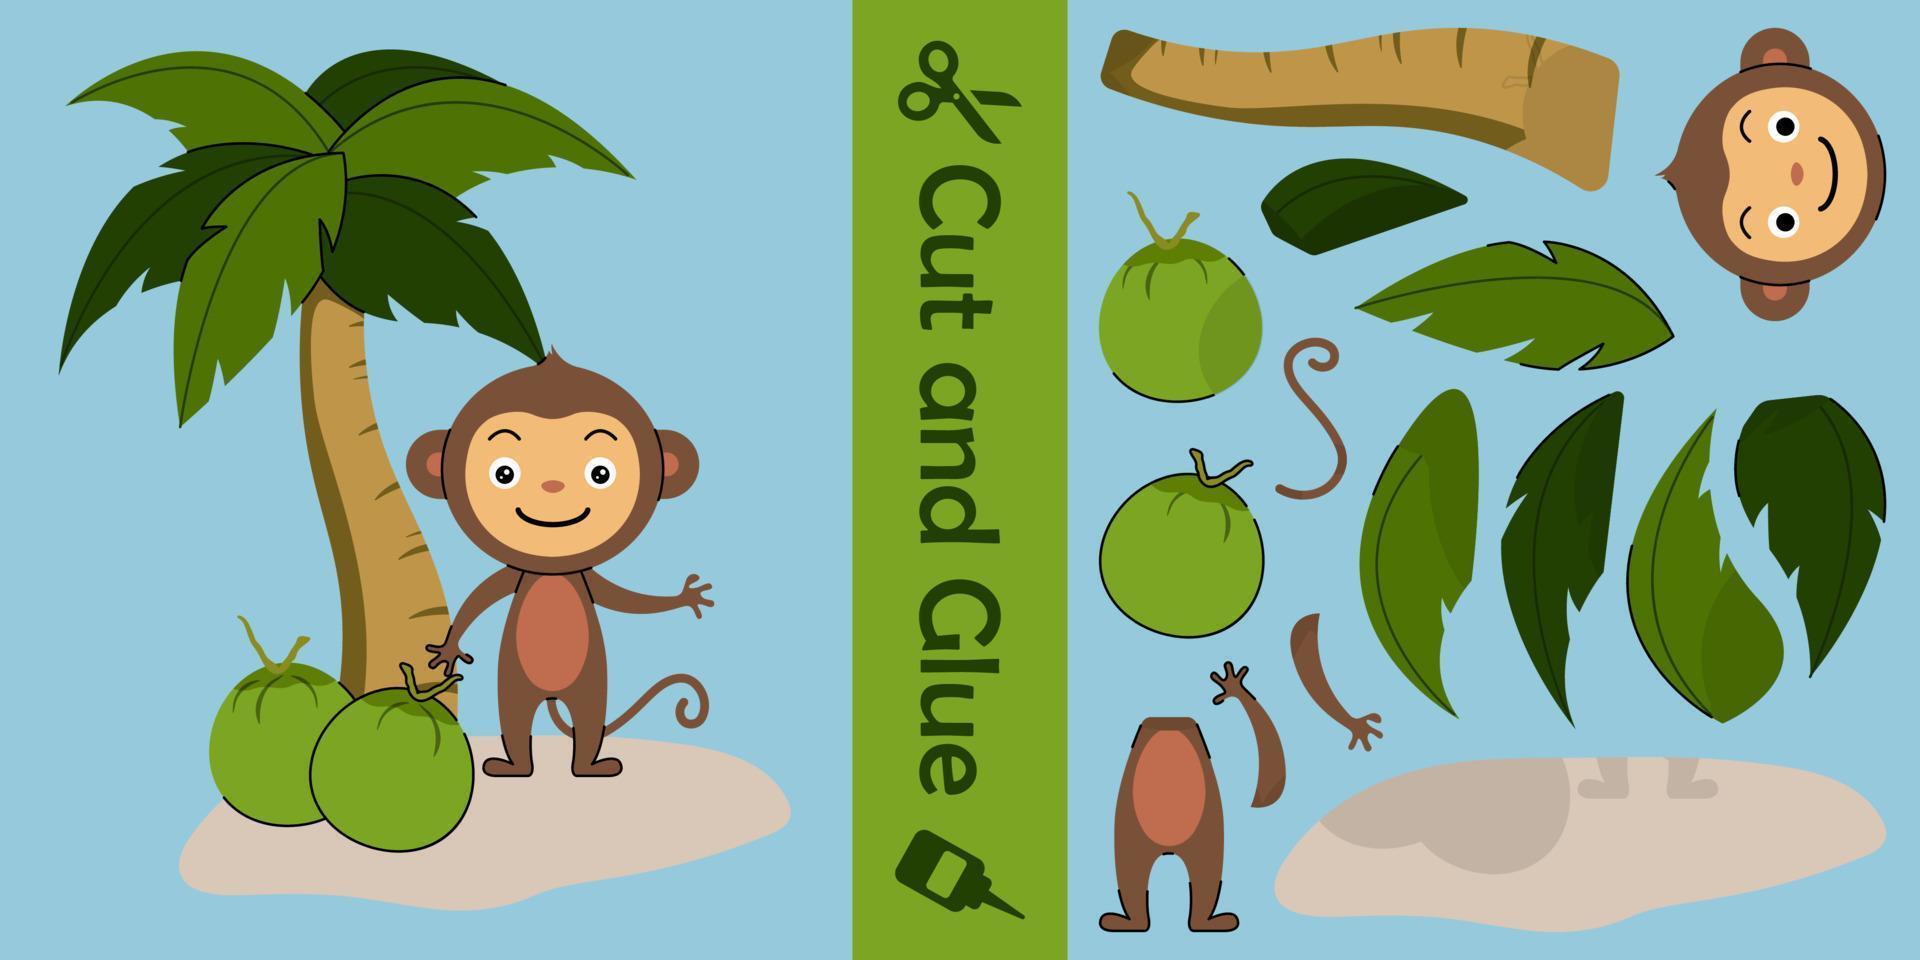 söt apa med kokos. utbildning pappersspel för barn. klipp och klistra. vektor illustration